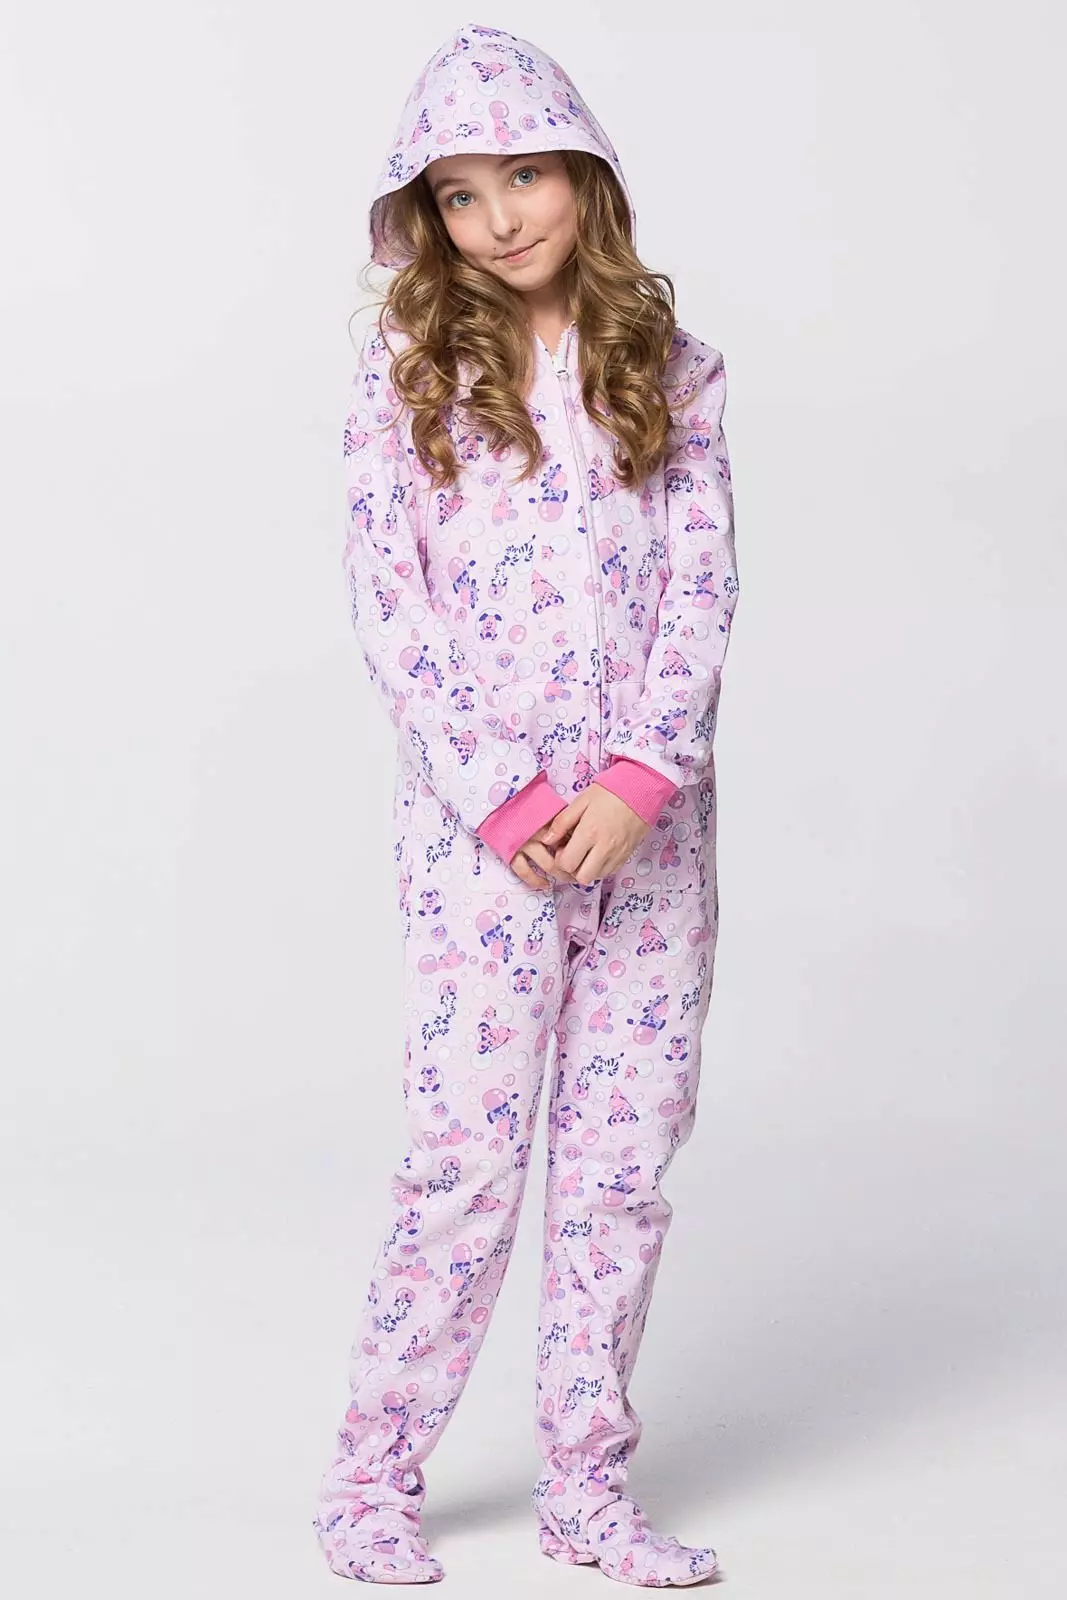 Валберис пижама для девочек. Домашний комбинезон для девочки. Пижамный комбинезон для девочки. Детские пижамы. Красивые пижамы для девочек.